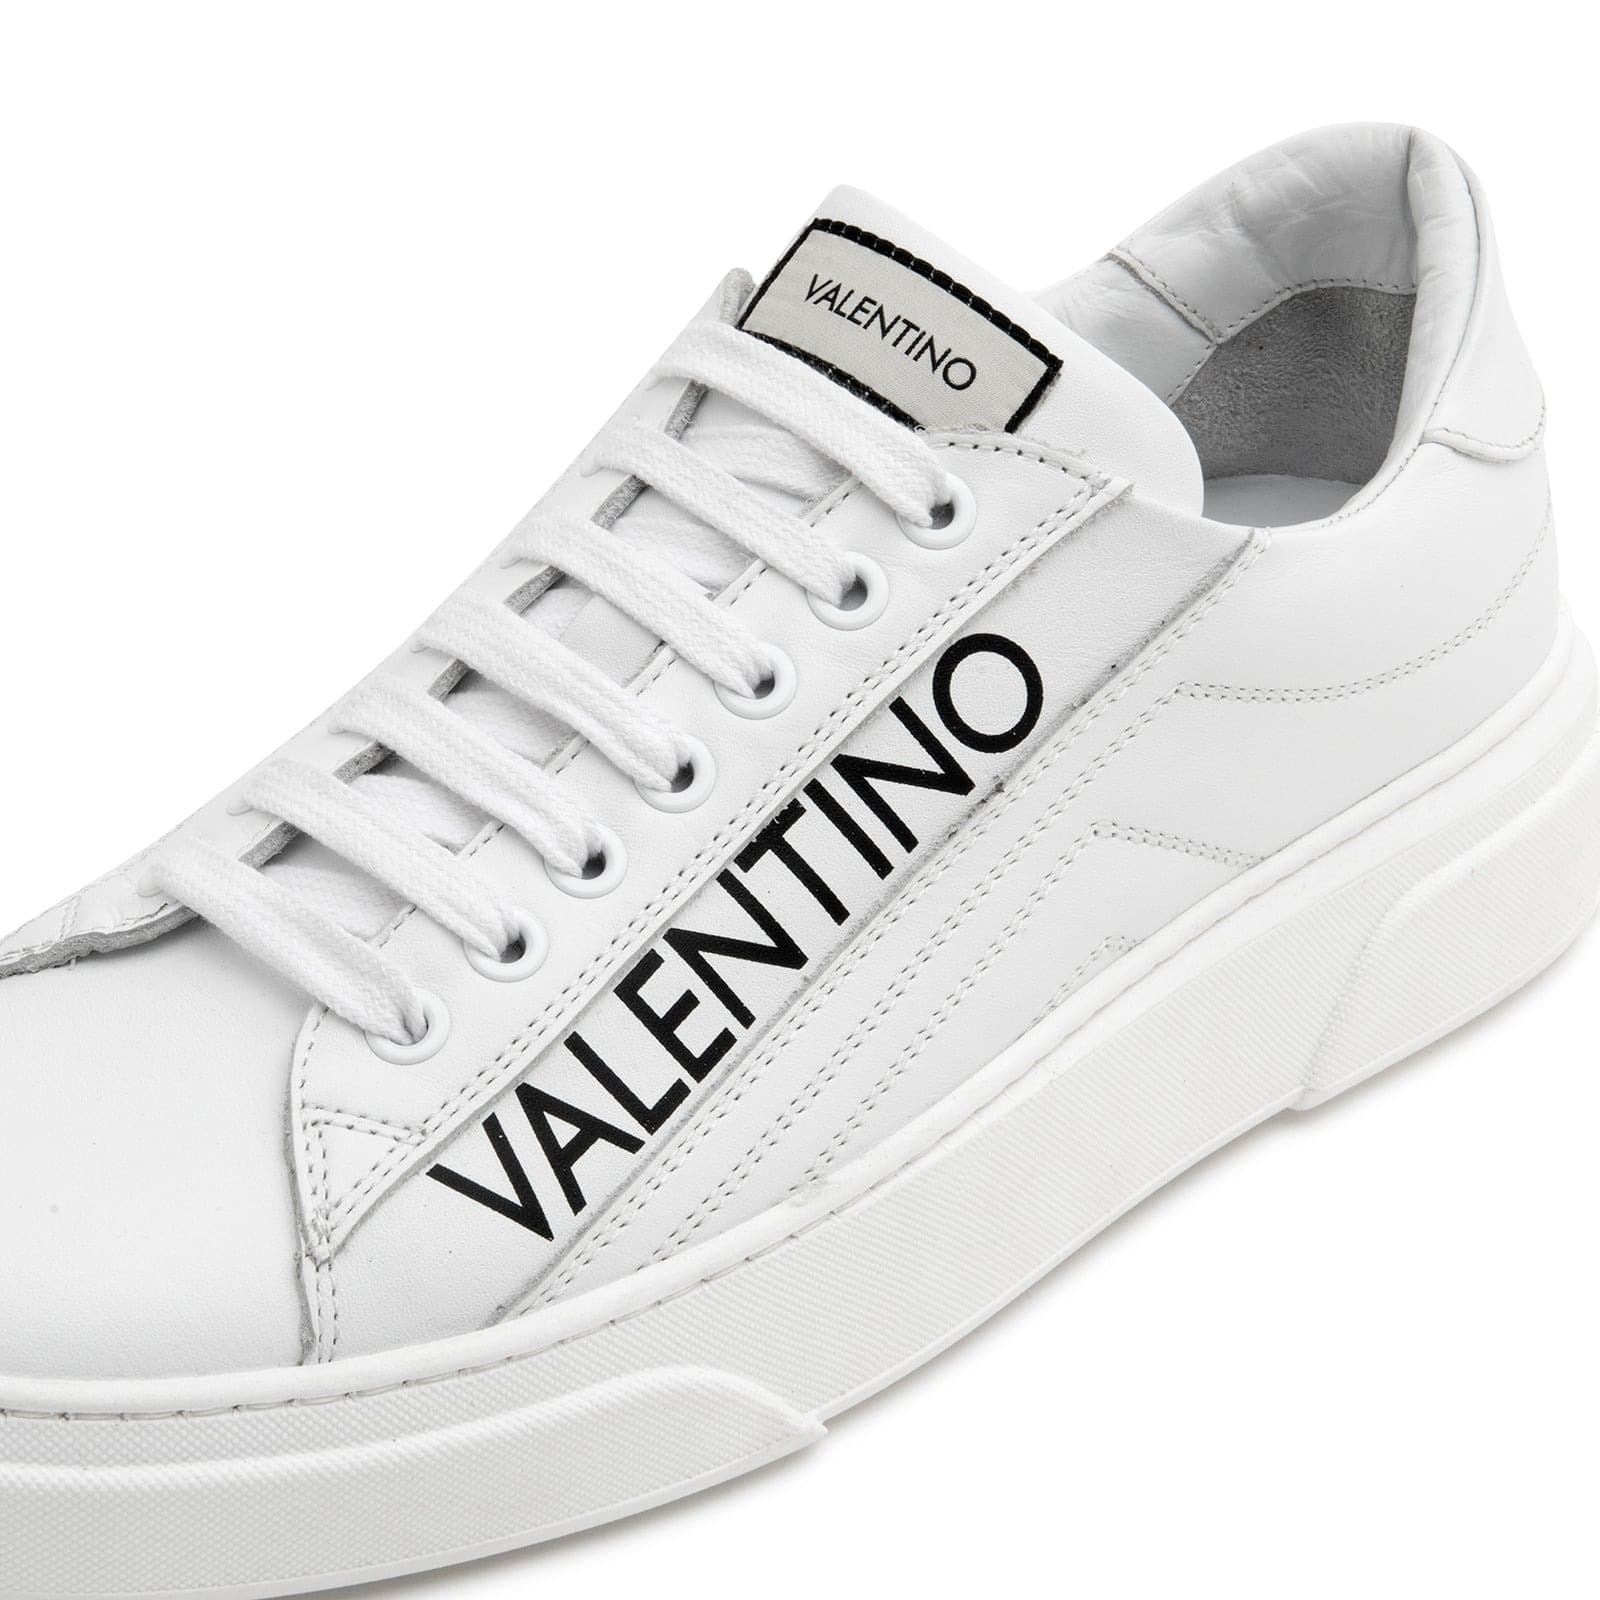 Zapatillas Mario Valentino 92R2103VIT 010 blanco - Imagen 4